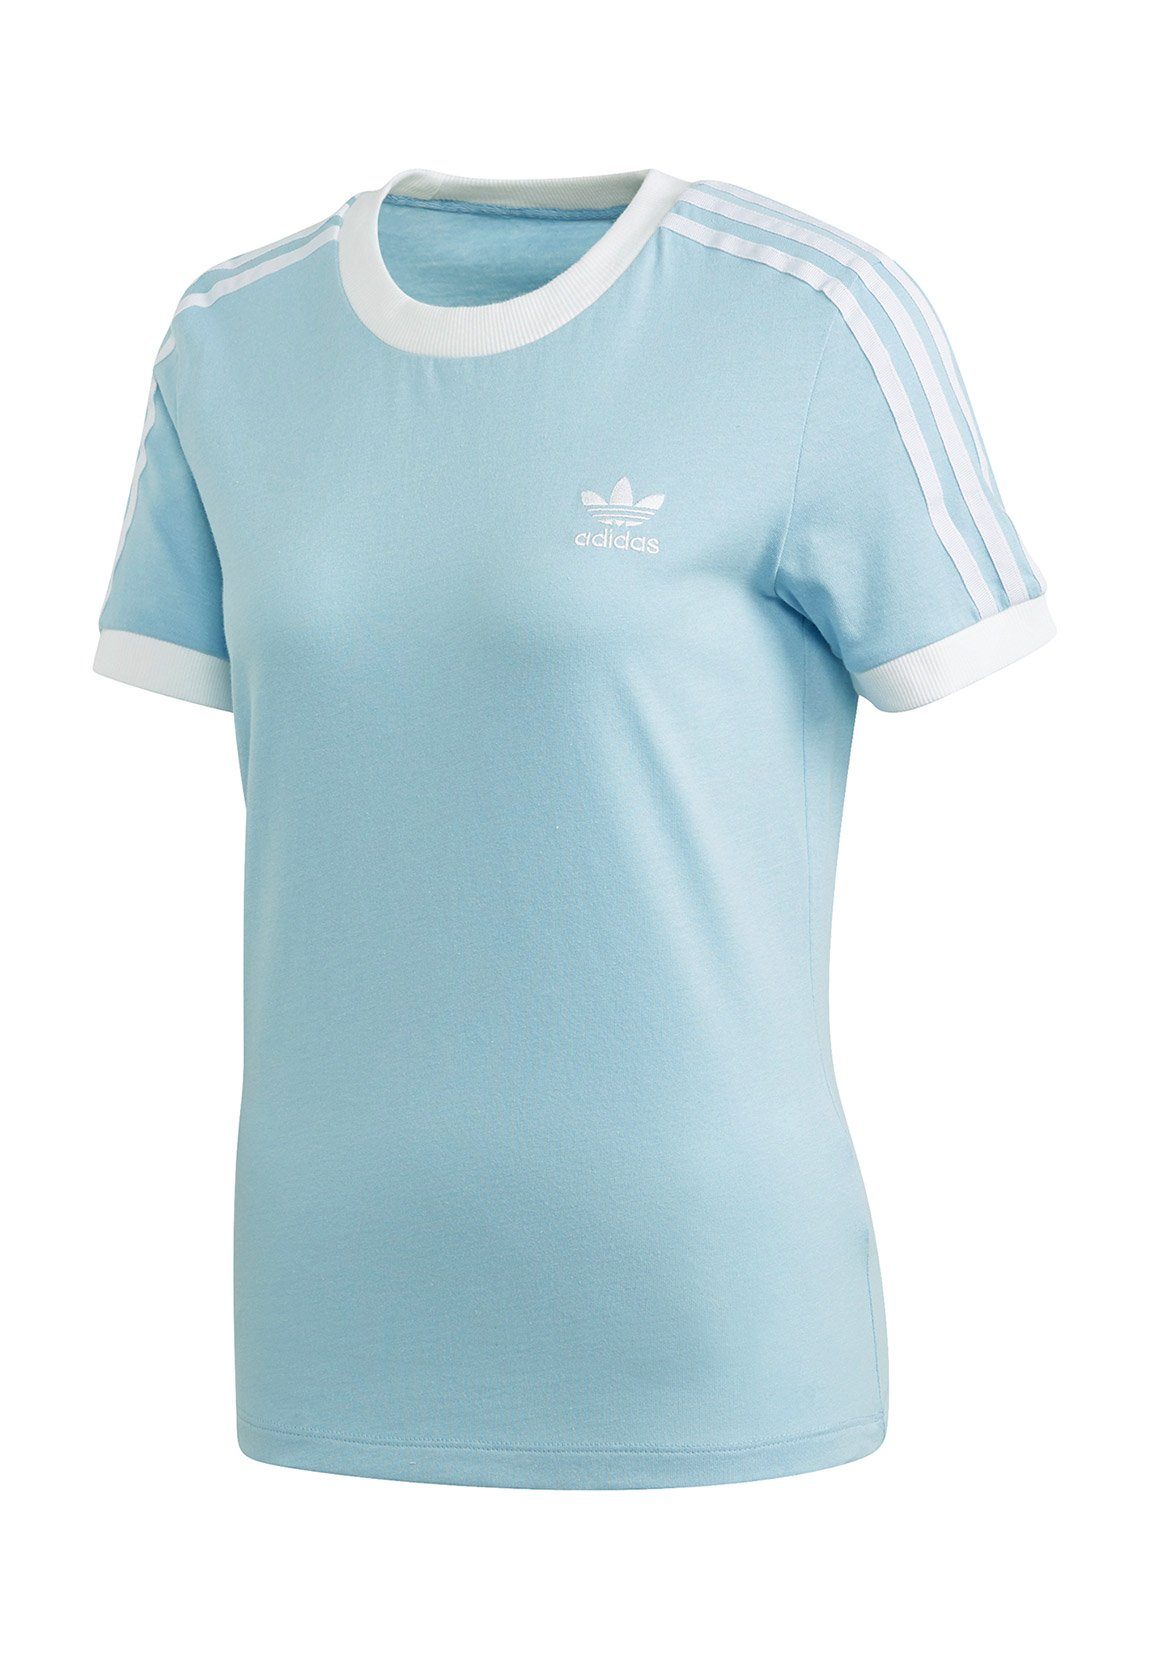 adidas Originals T-Shirt »Adidas Originals T-Shirt Damen 3 STR TEE FM3322  Hellblau« online kaufen | OTTO